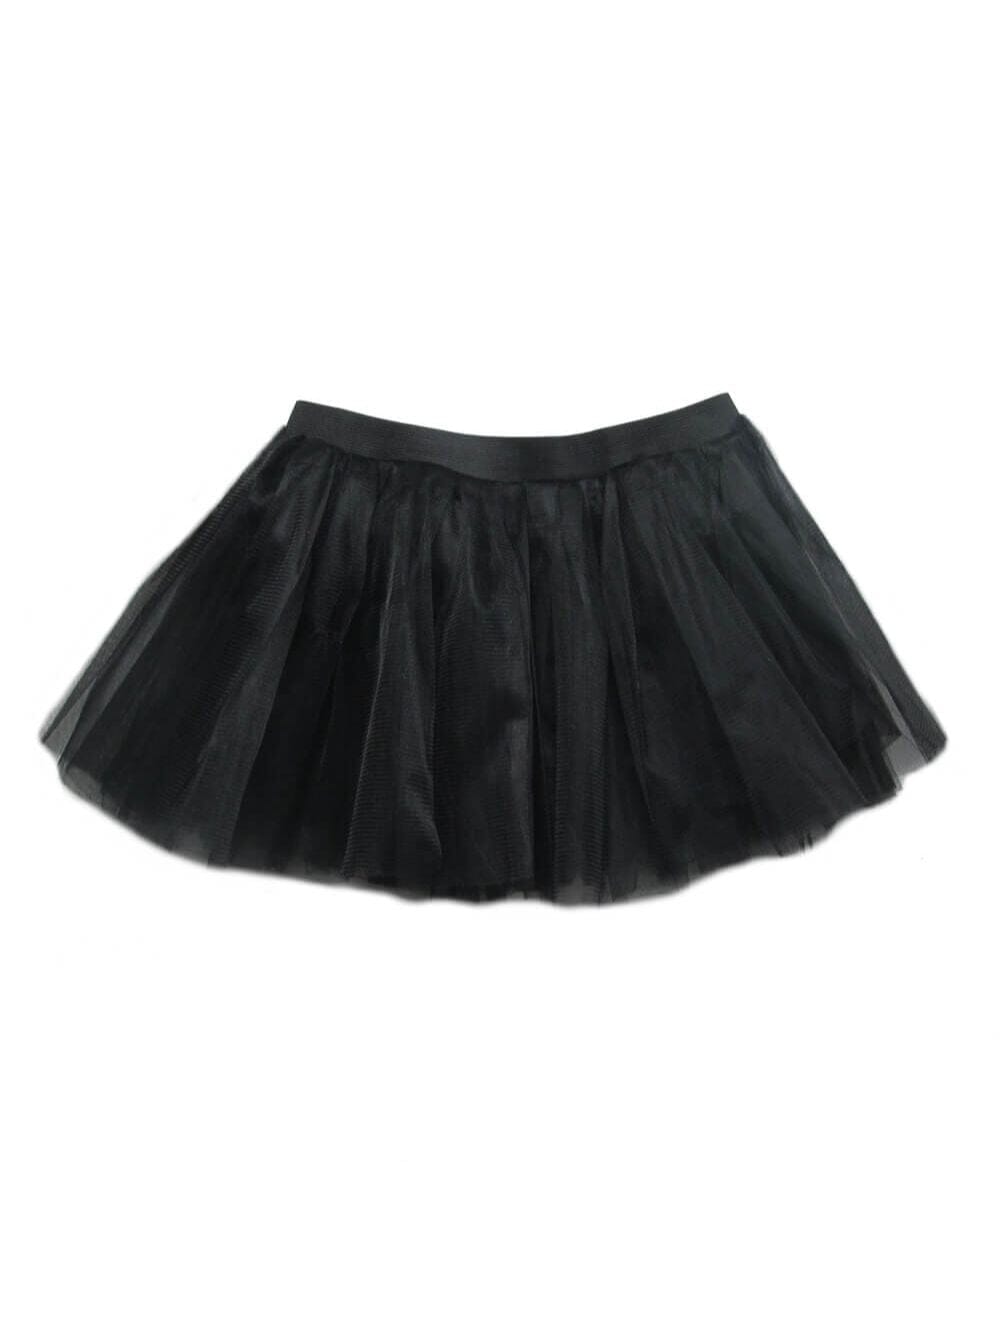 Black Adult Size Women's 5K Running Tutu Skirt Costume - Sydney So Sweet